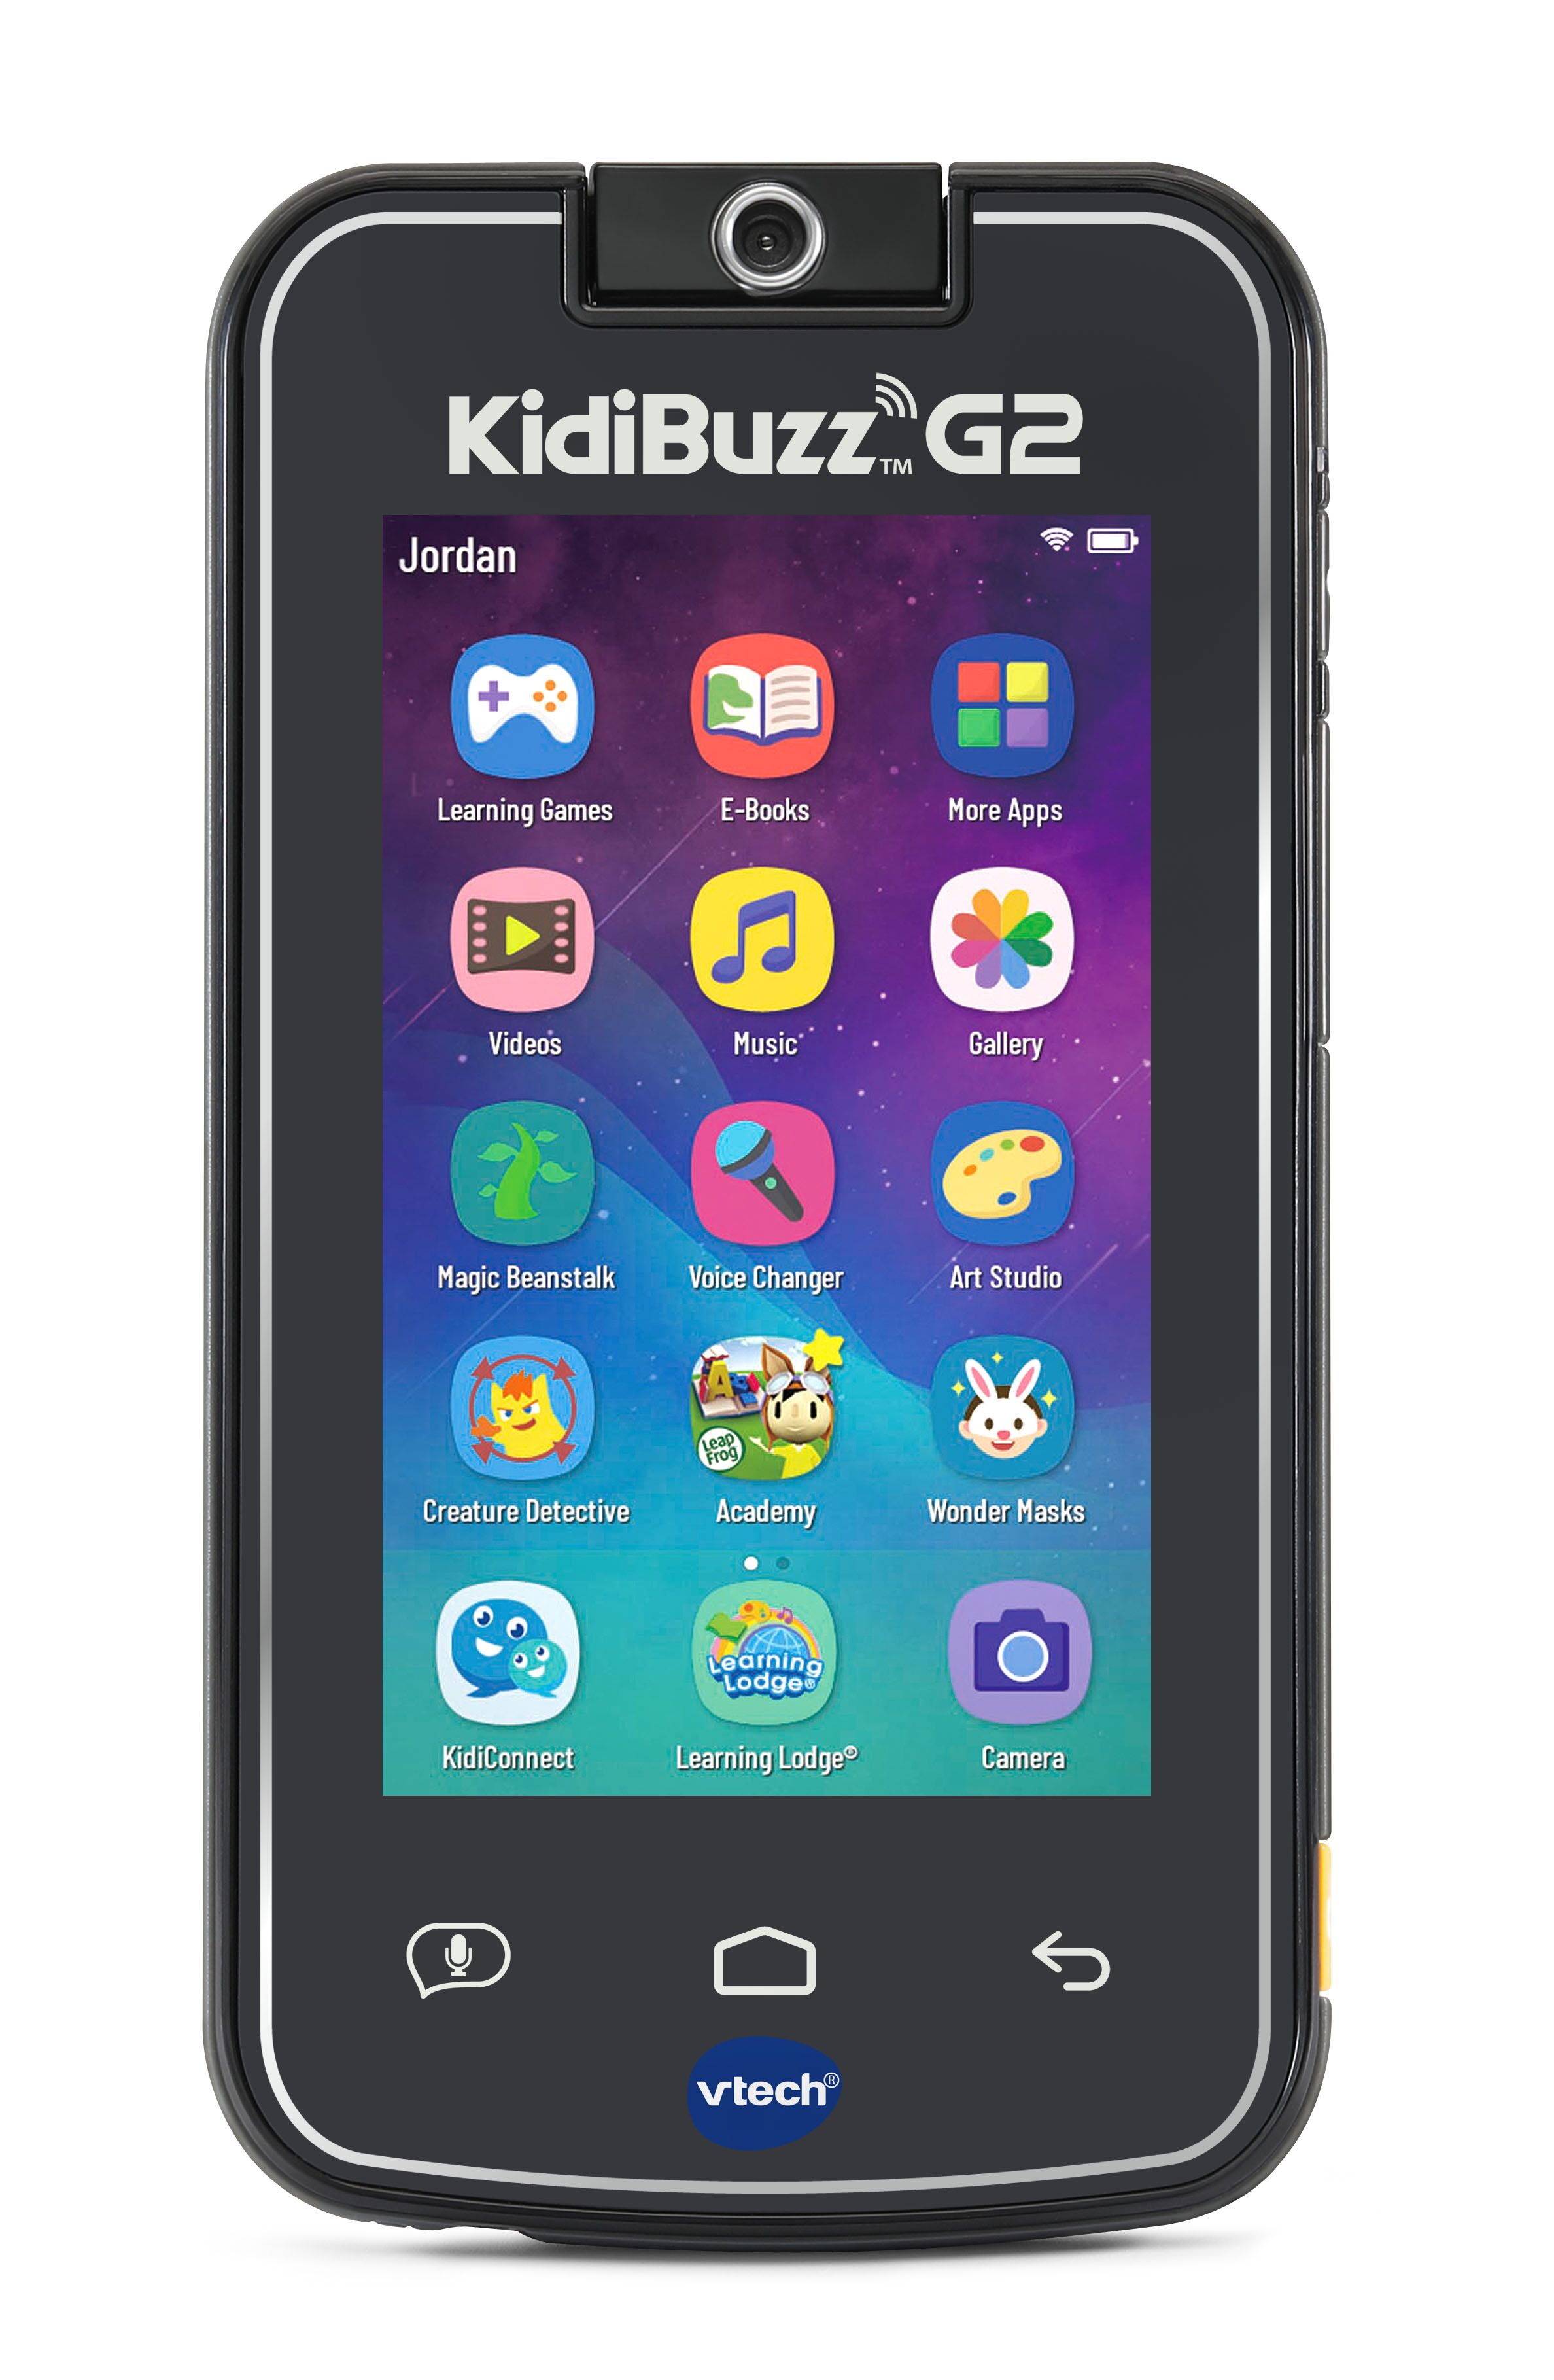 KidiBuzz G2